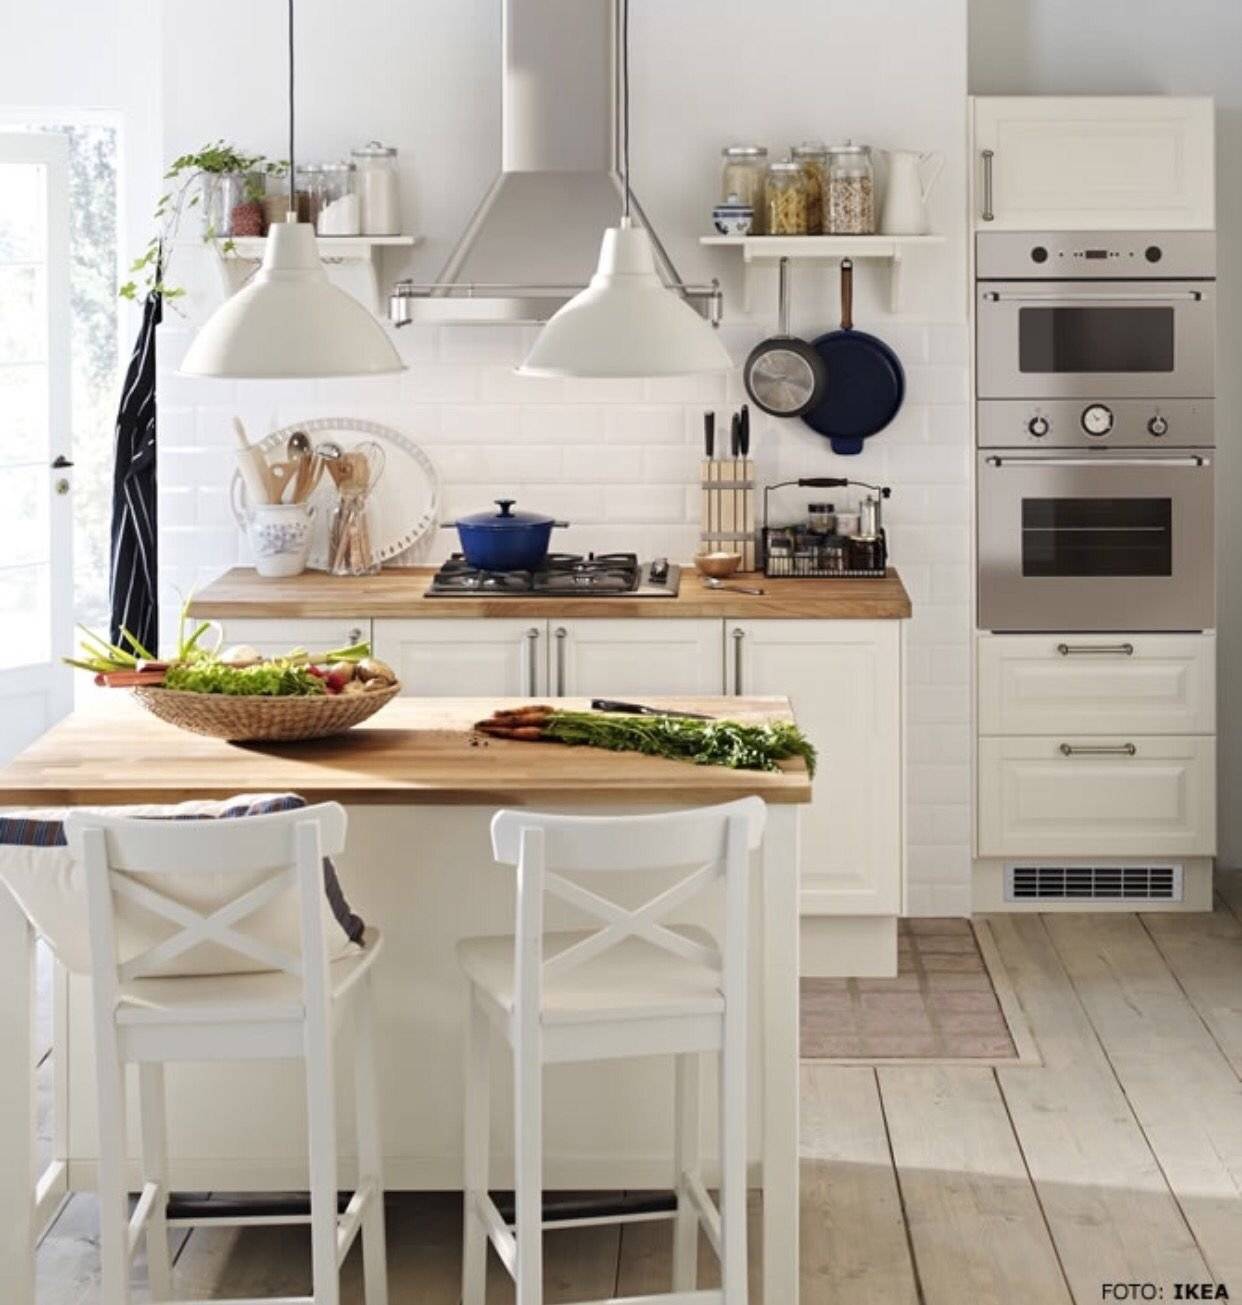 Кухни "икеа" в интерьере - 40 реальных фото готовых кухонь